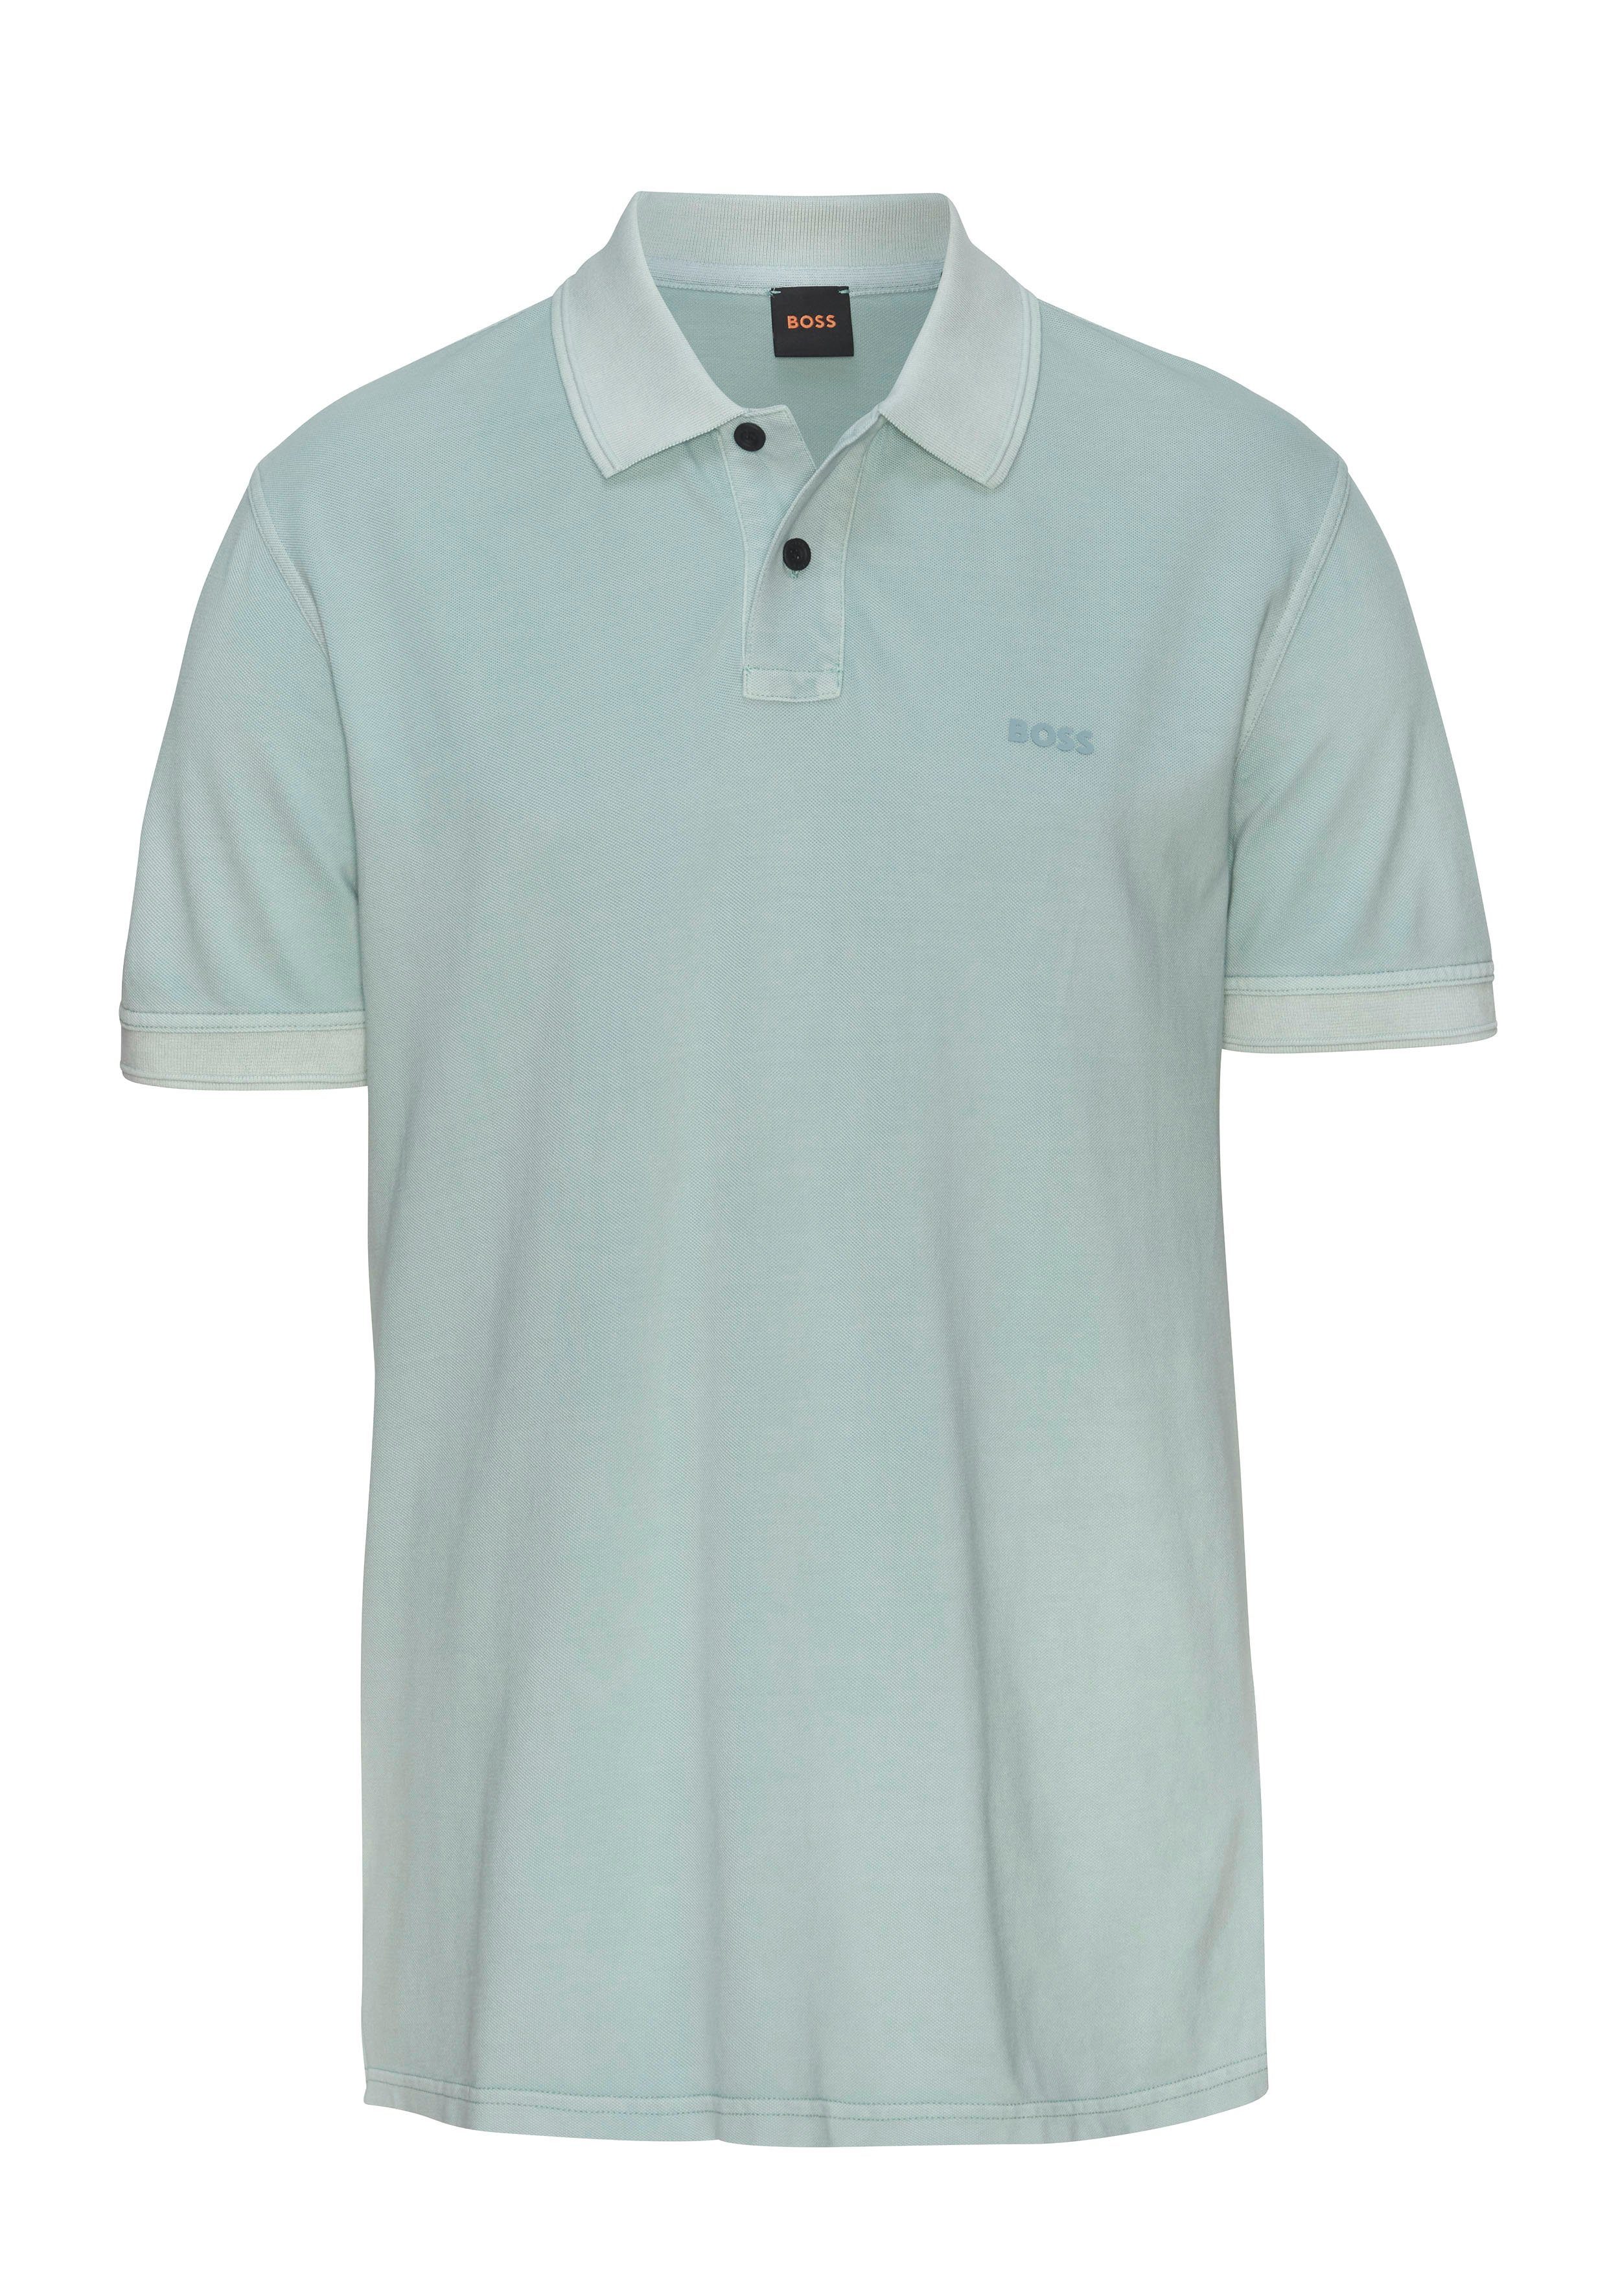 BOSS ORANGE Poloshirt Prime mit Knopfleiste 446_Turquoise/Aqua